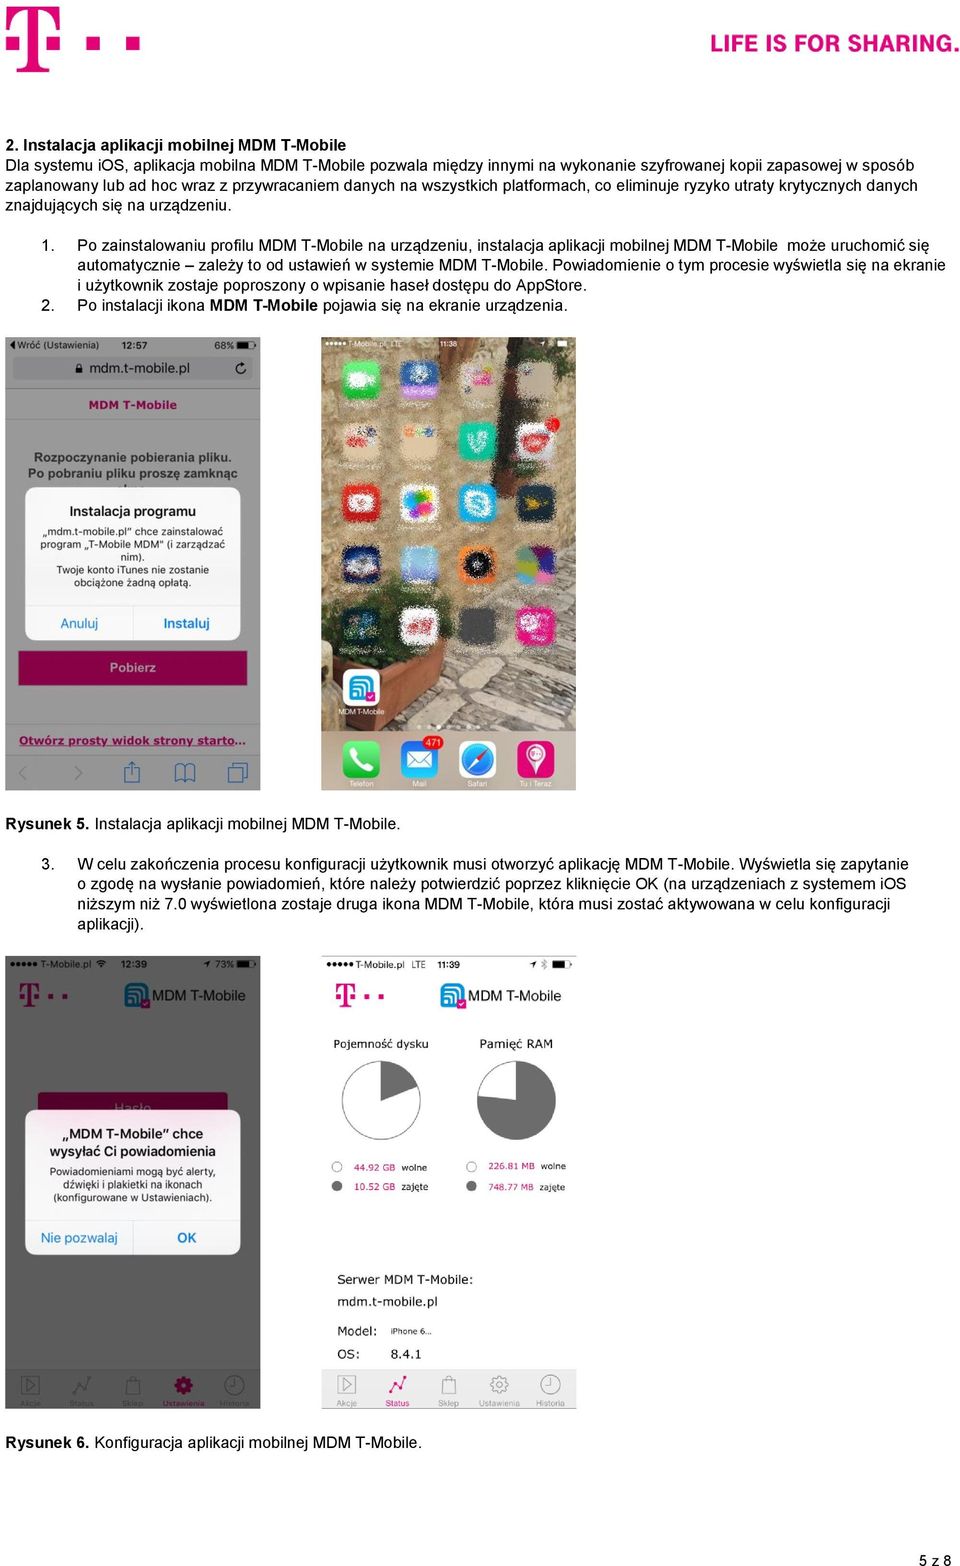 Po zainstalowaniu profilu MDM T-Mobile na urządzeniu, instalacja aplikacji mobilnej MDM T-Mobile może uruchomić się automatycznie zależy to od ustawień w systemie MDM T-Mobile.